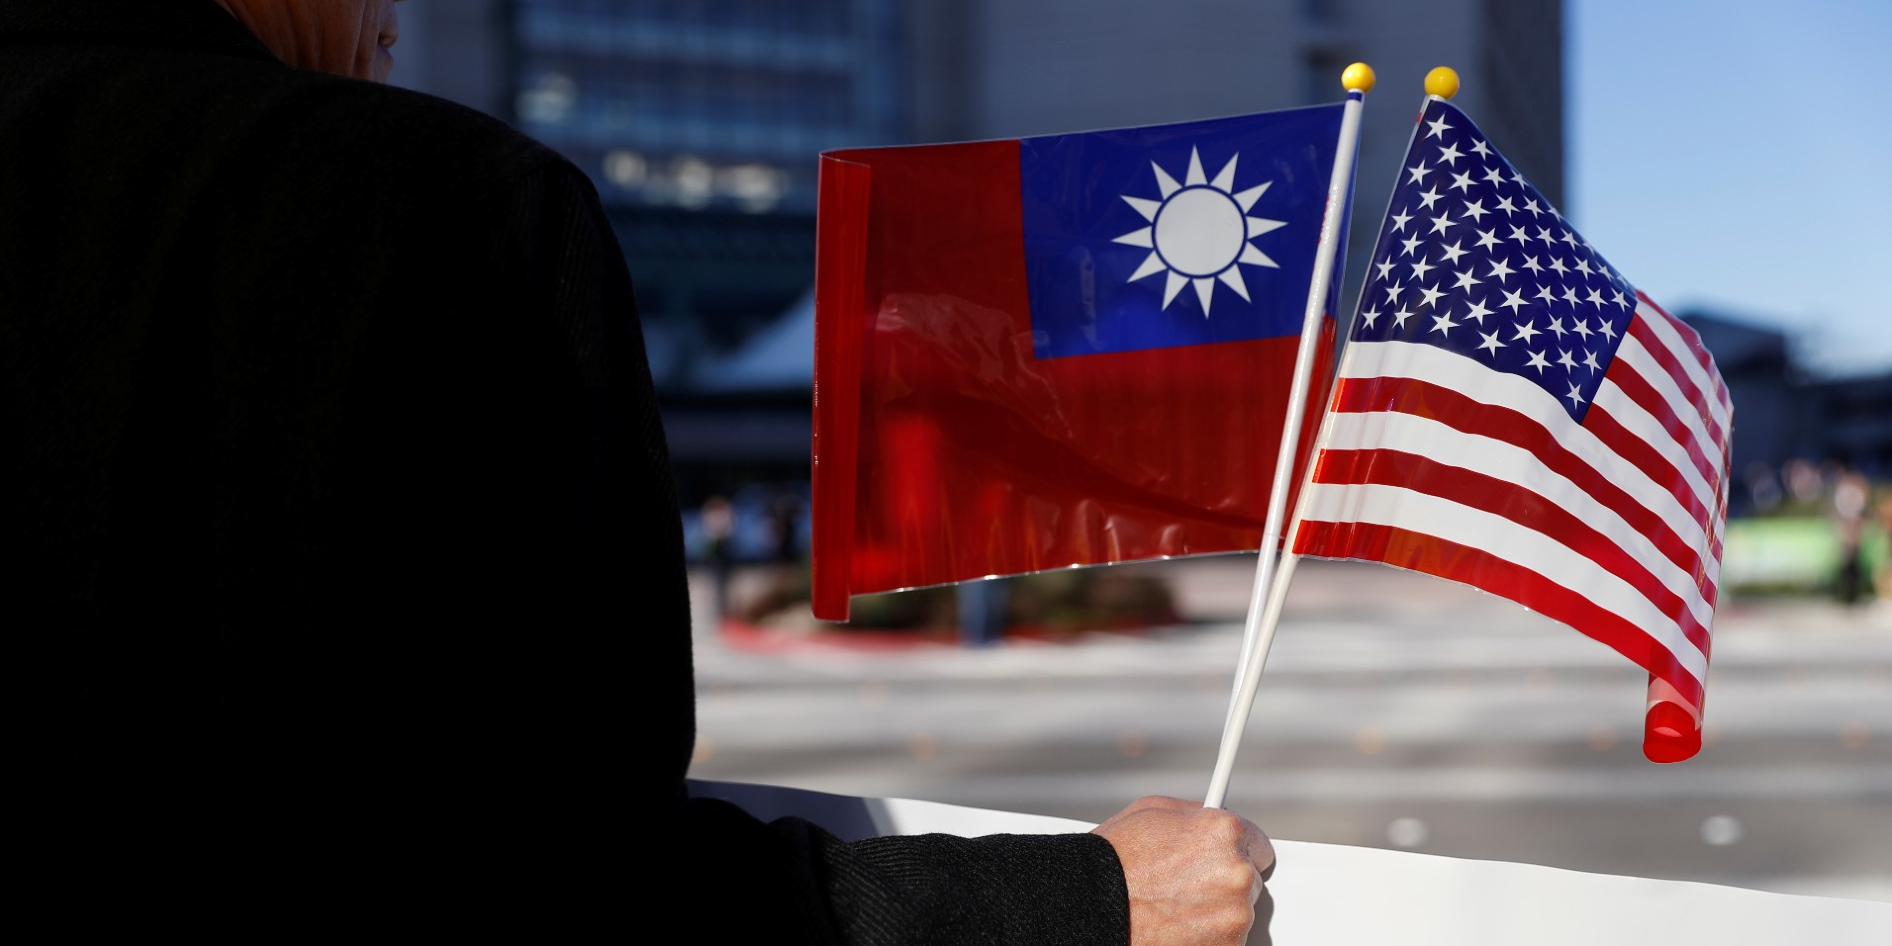 Les États-Unis et la Chine s'écharpent toujours au sujet de Taïwan